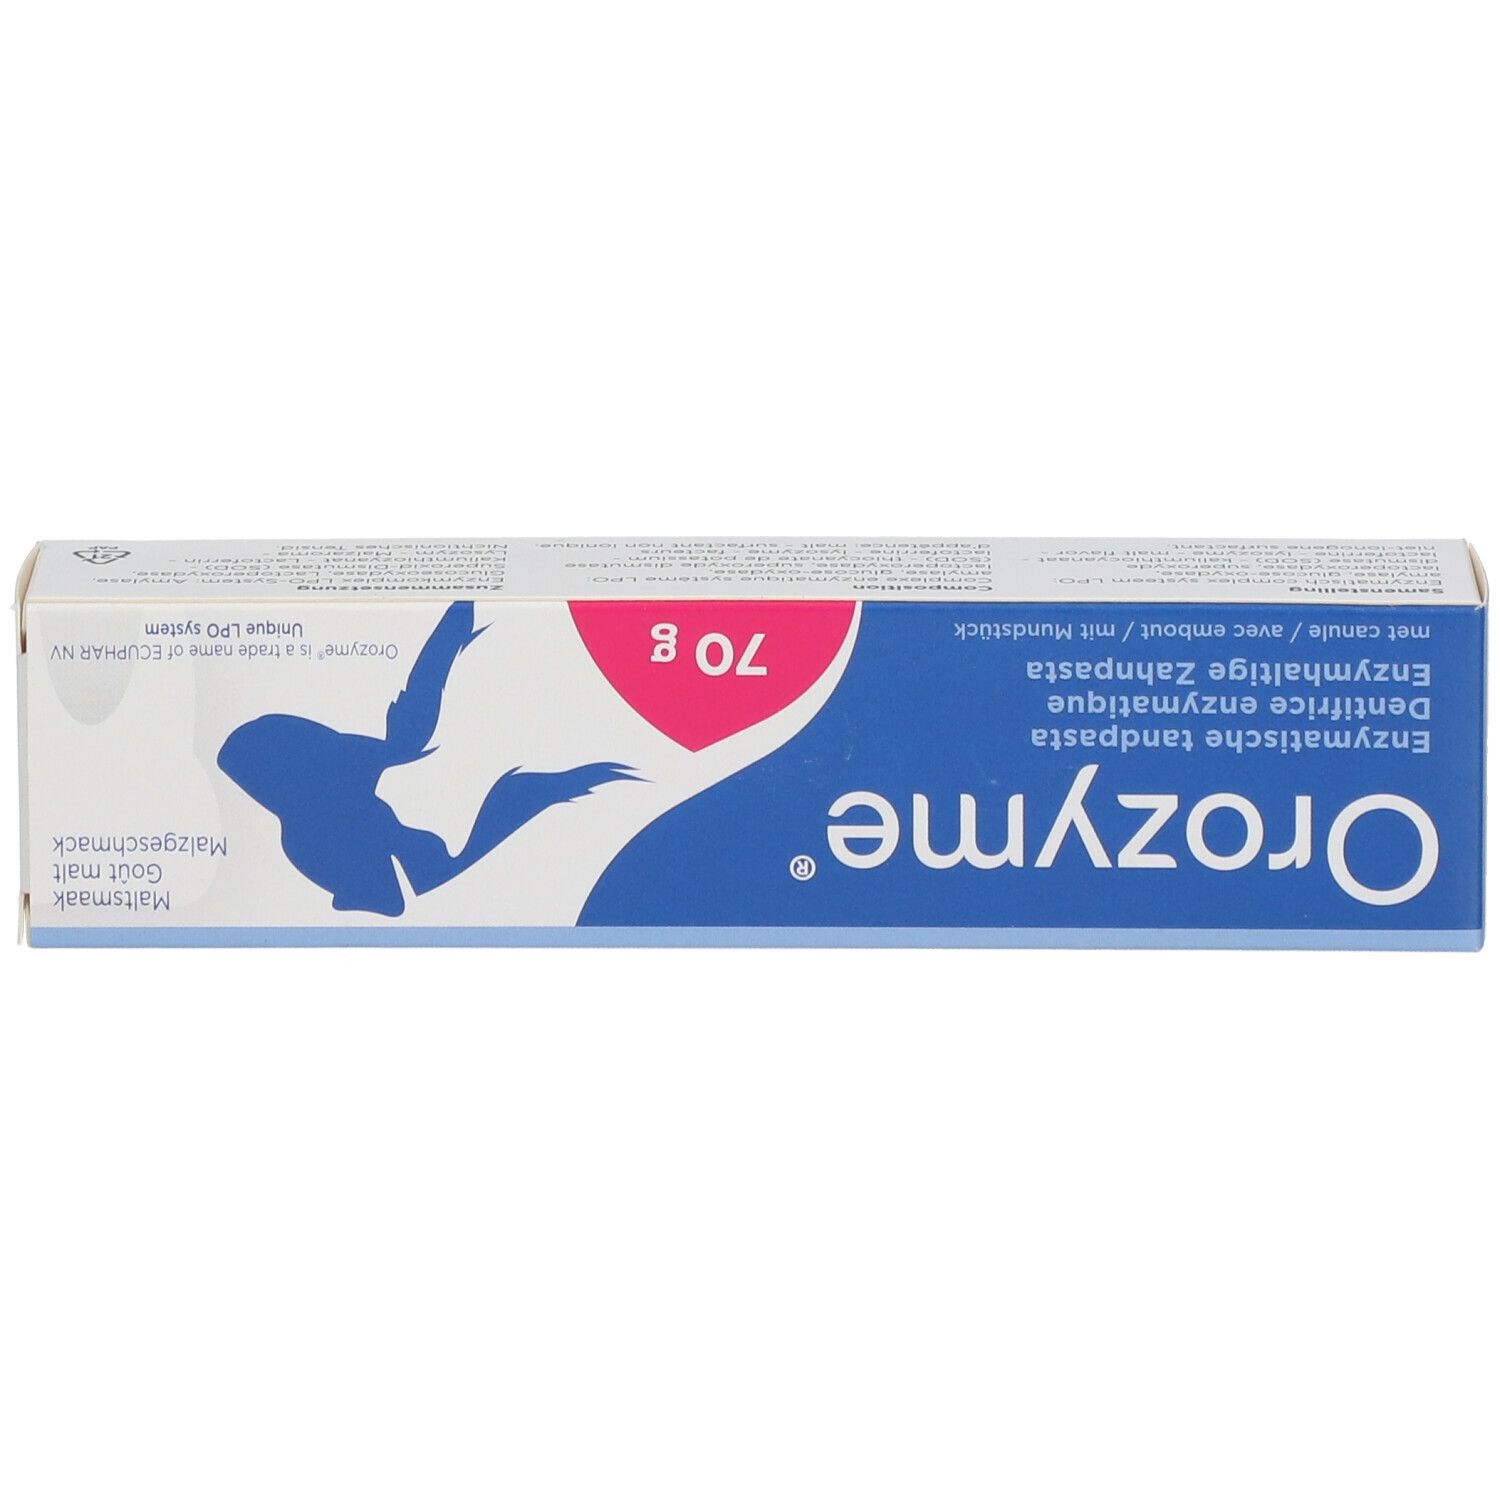 OROZYME® Enzymhaltige Zahnpasta mit Malzgeschmack für Hunde und Katzen